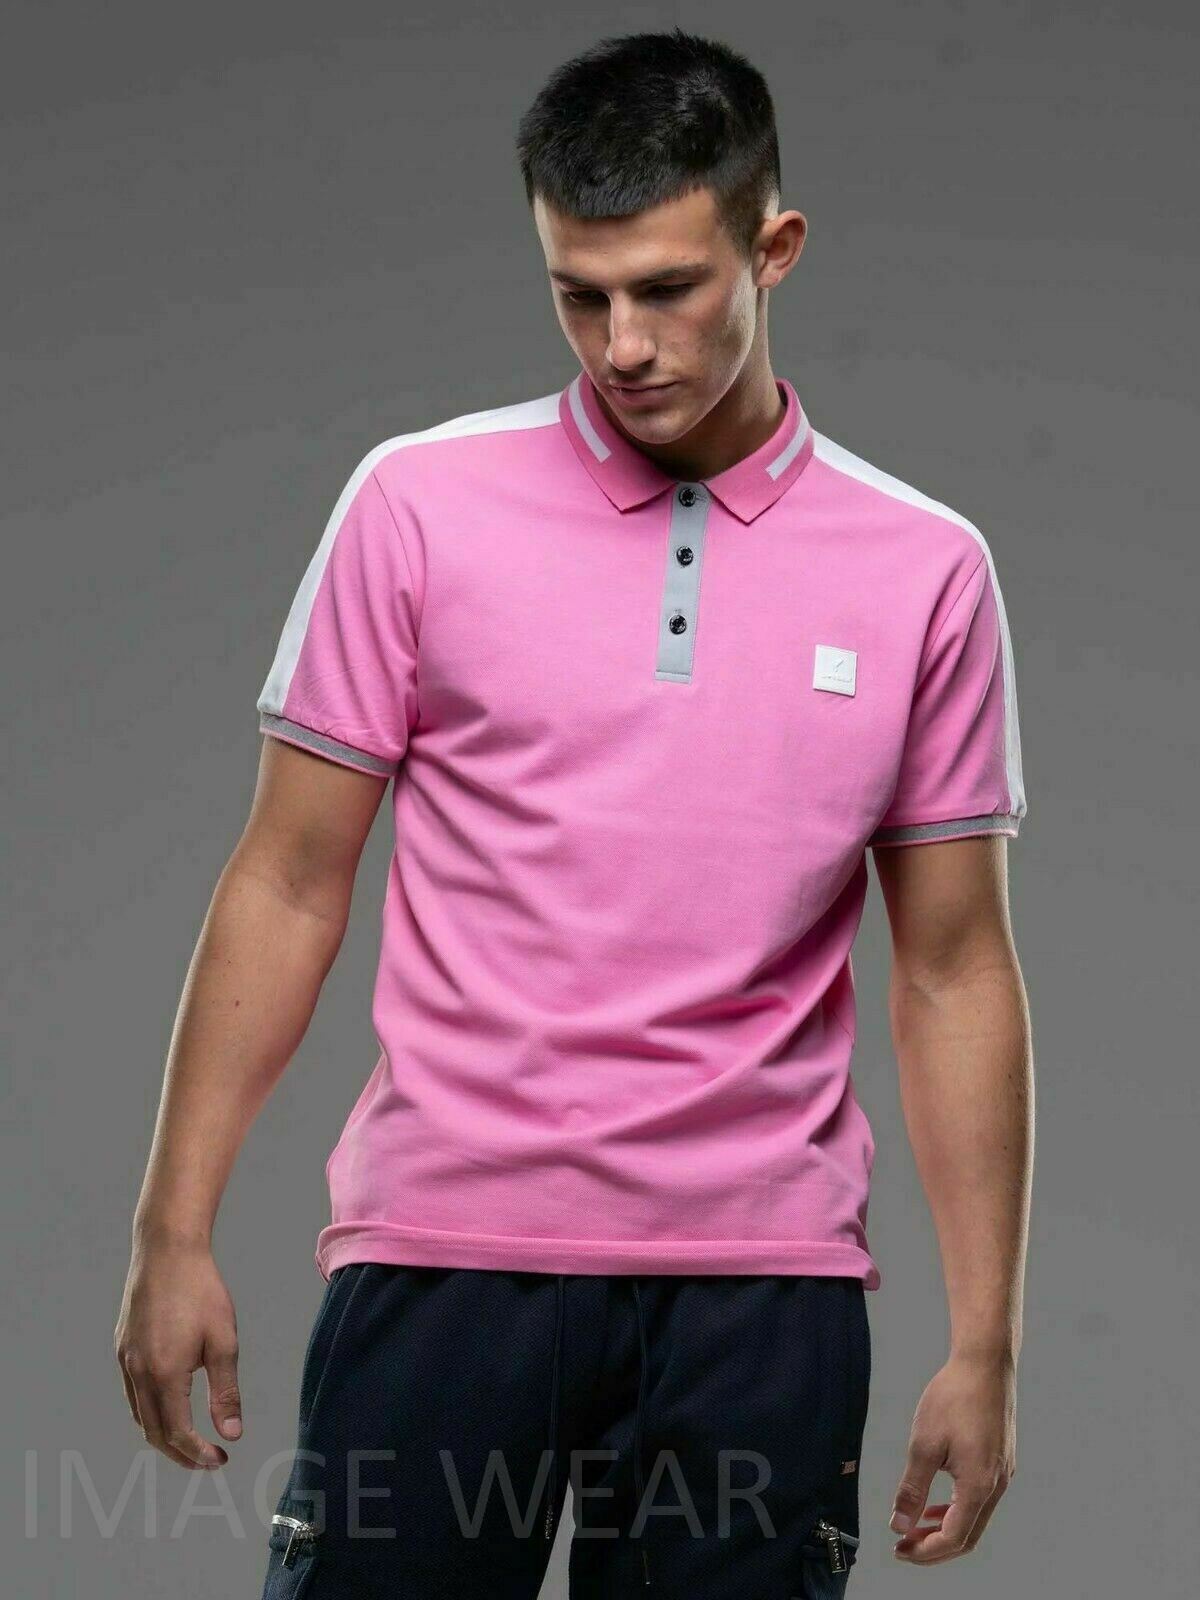 D-Rock Pique Premium – Wear Shirt Cotton Polo Image Stretch Men\'s